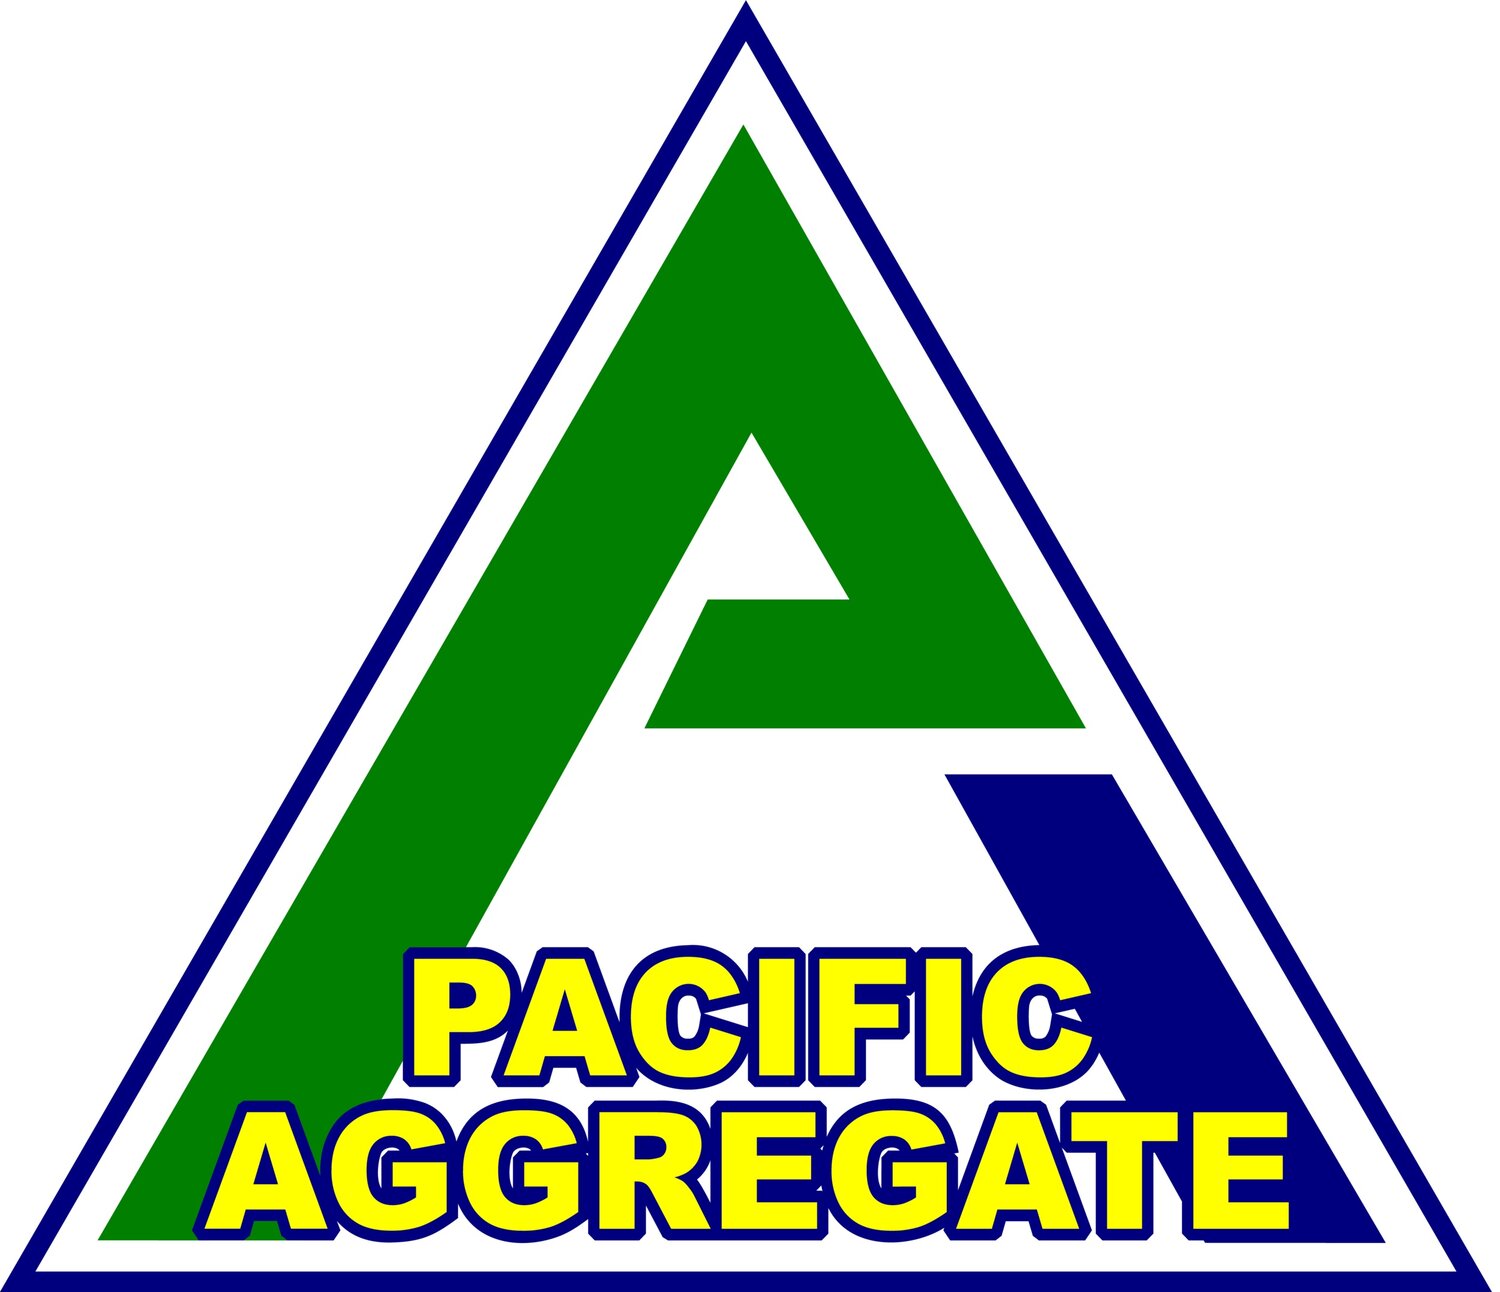 Pacific Aggregate